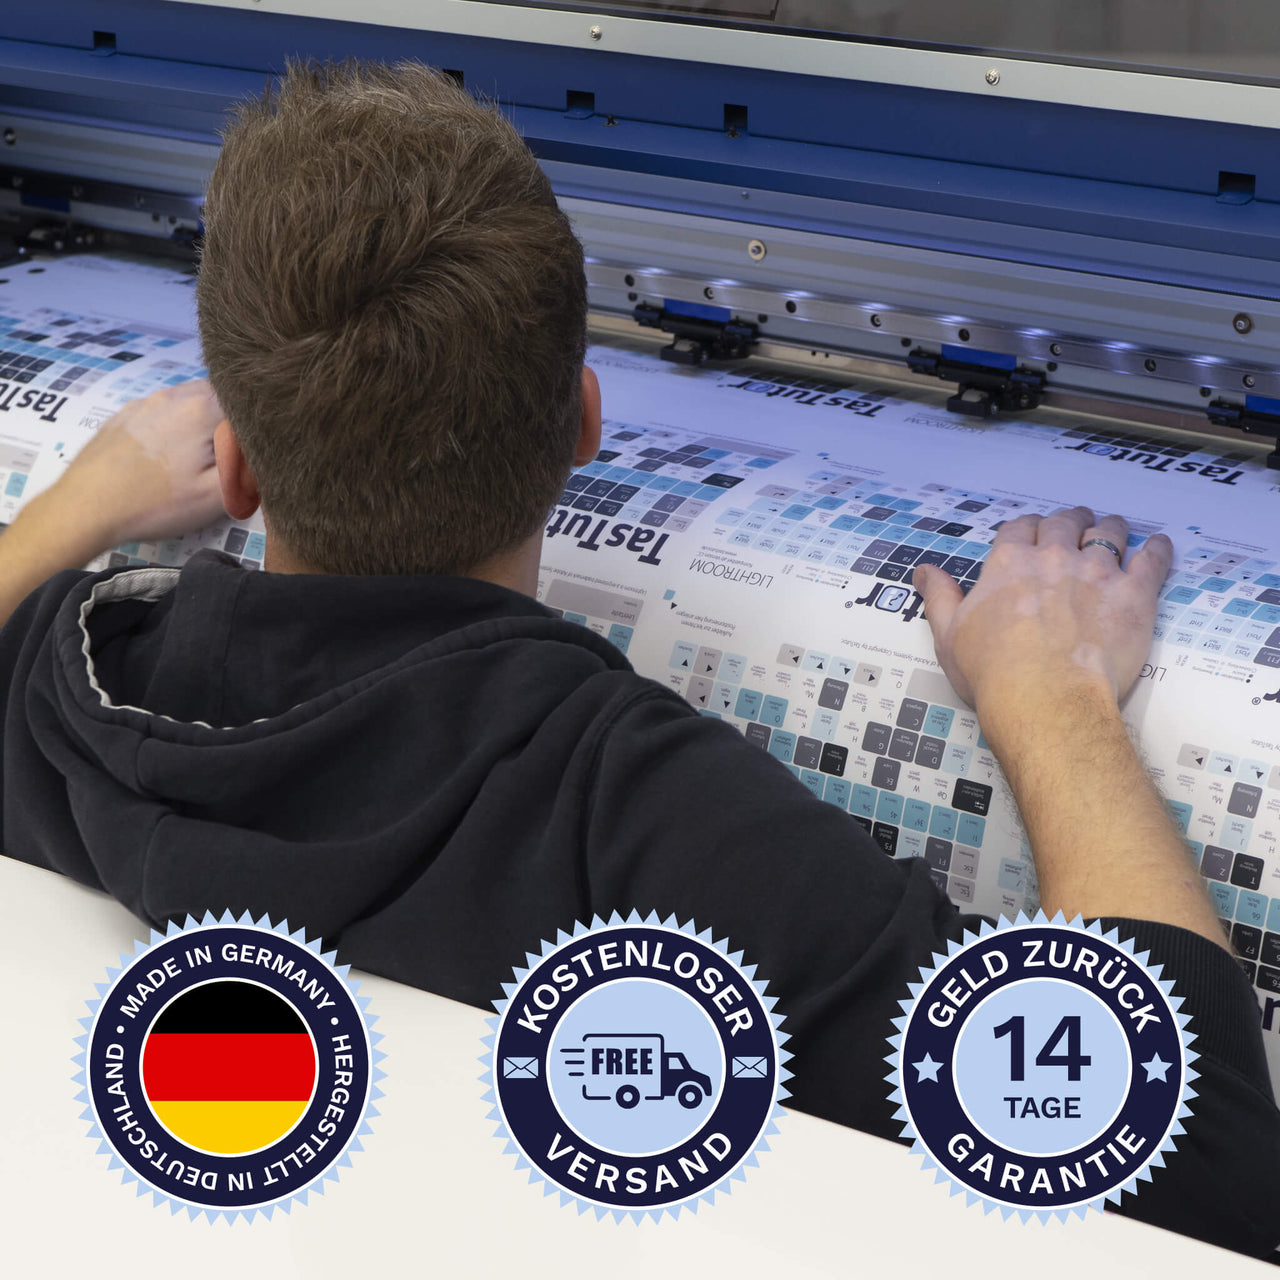 10 Finger System Tastaturaufkleber werden in Deutschland hergestellt. Der Versand ist kostenlos und wir gewährleisten 14 Tage Geld zurück Garantie. | TasTutor